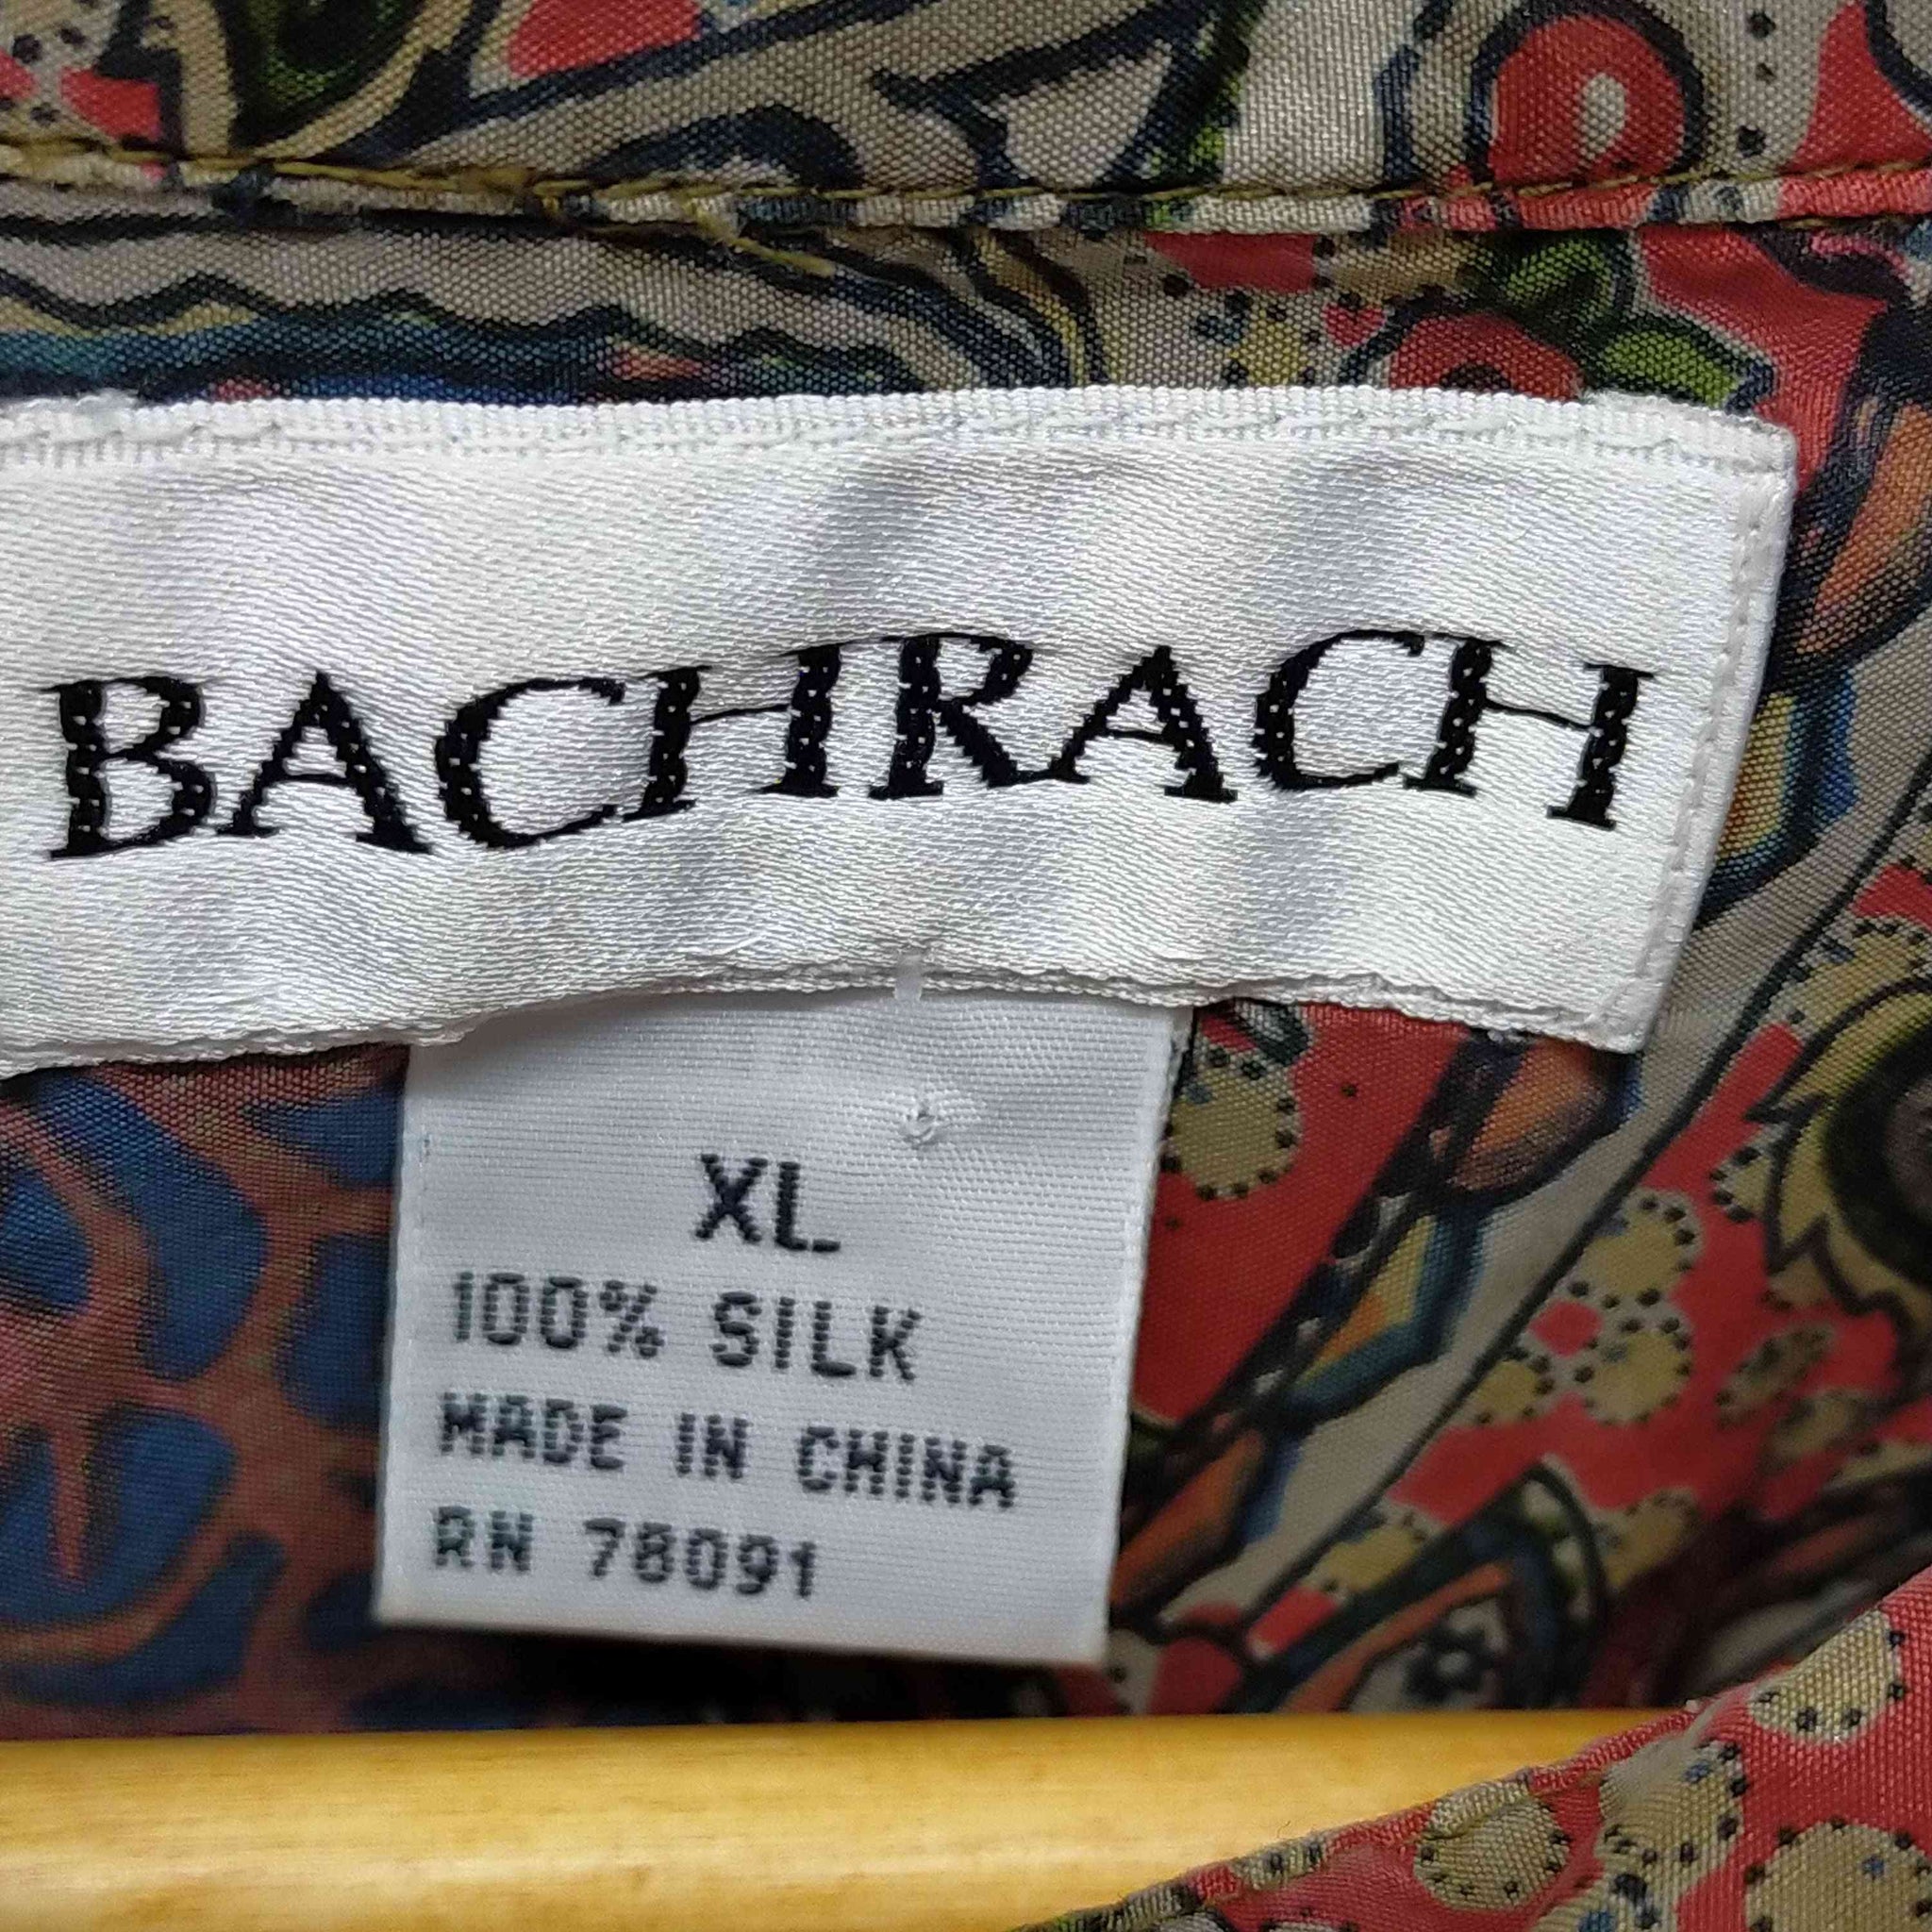 BACHRACH(バクラック)L/S シルク総柄シャツ